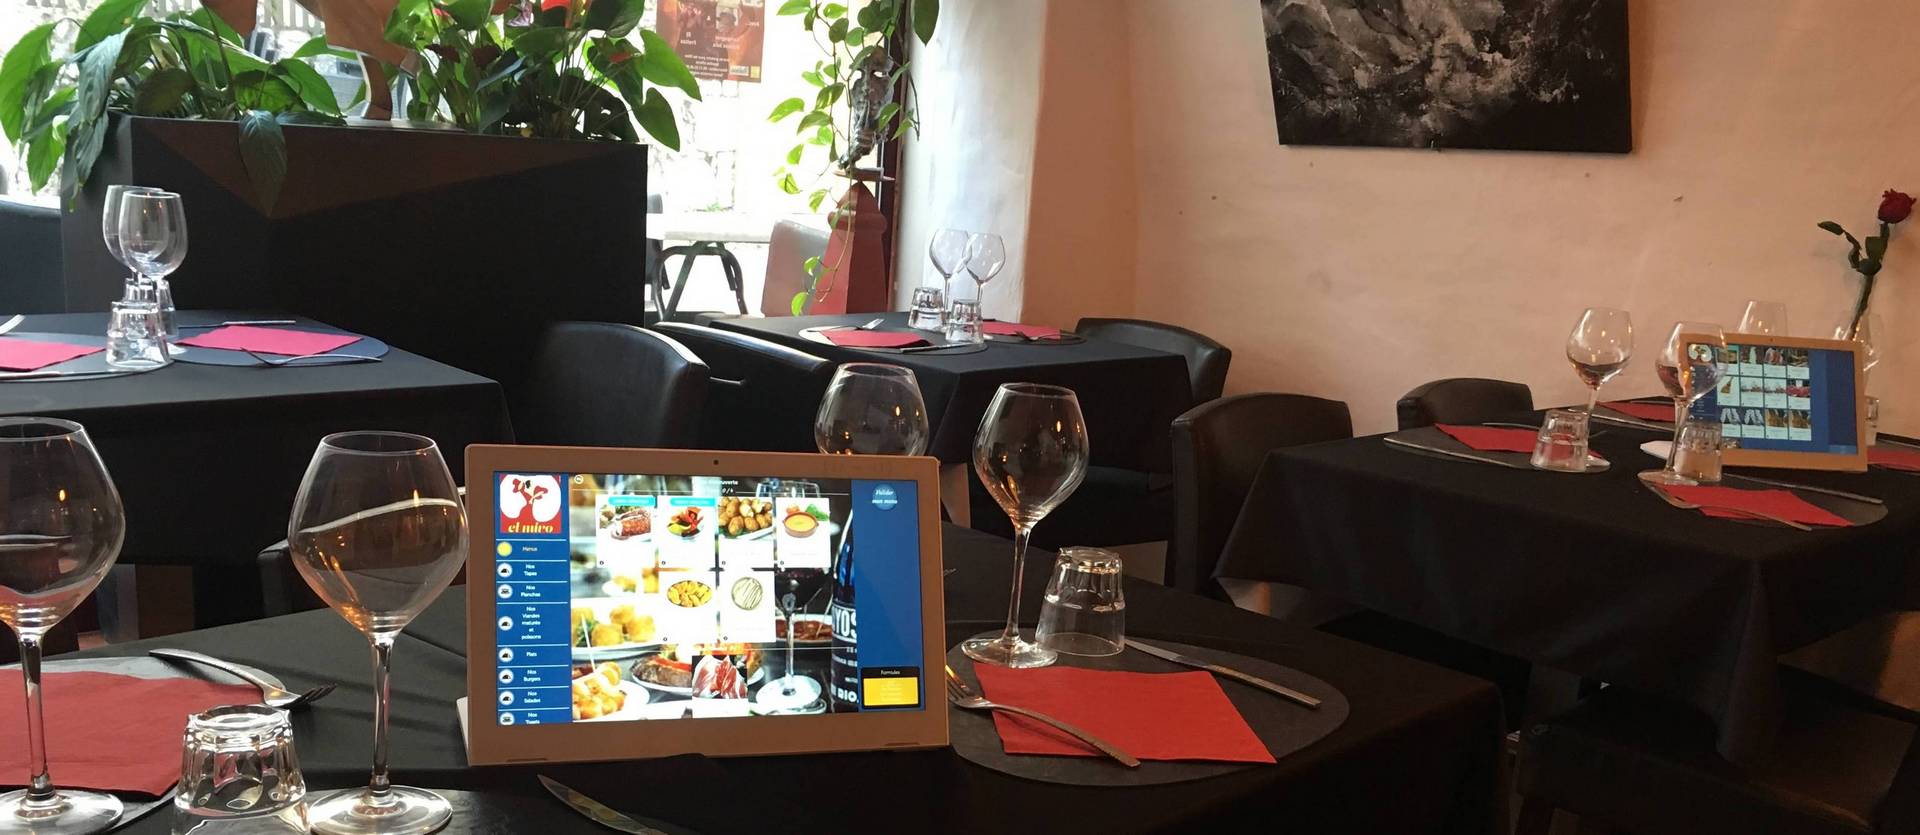 Tablette SelfTab en restaurant